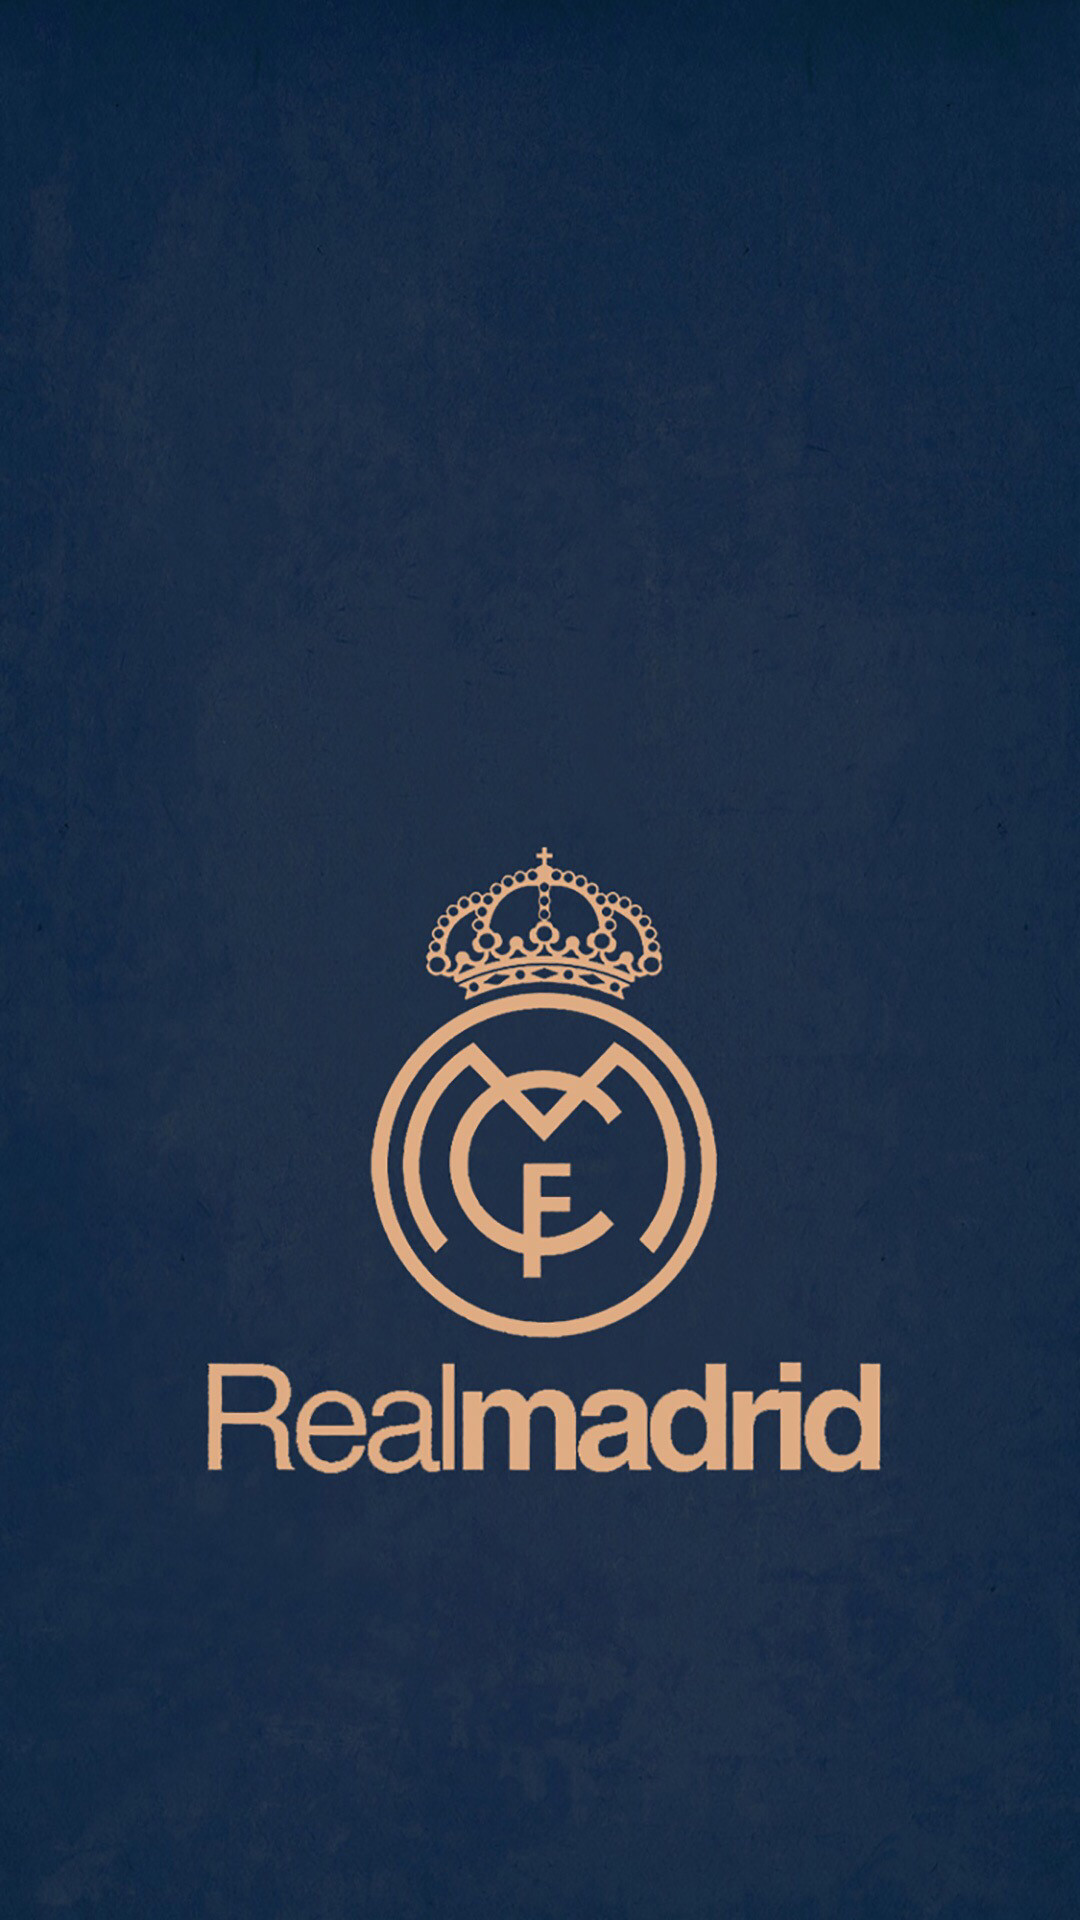 HD Real Madrid Wallpaper RealMadrid Wallpaper